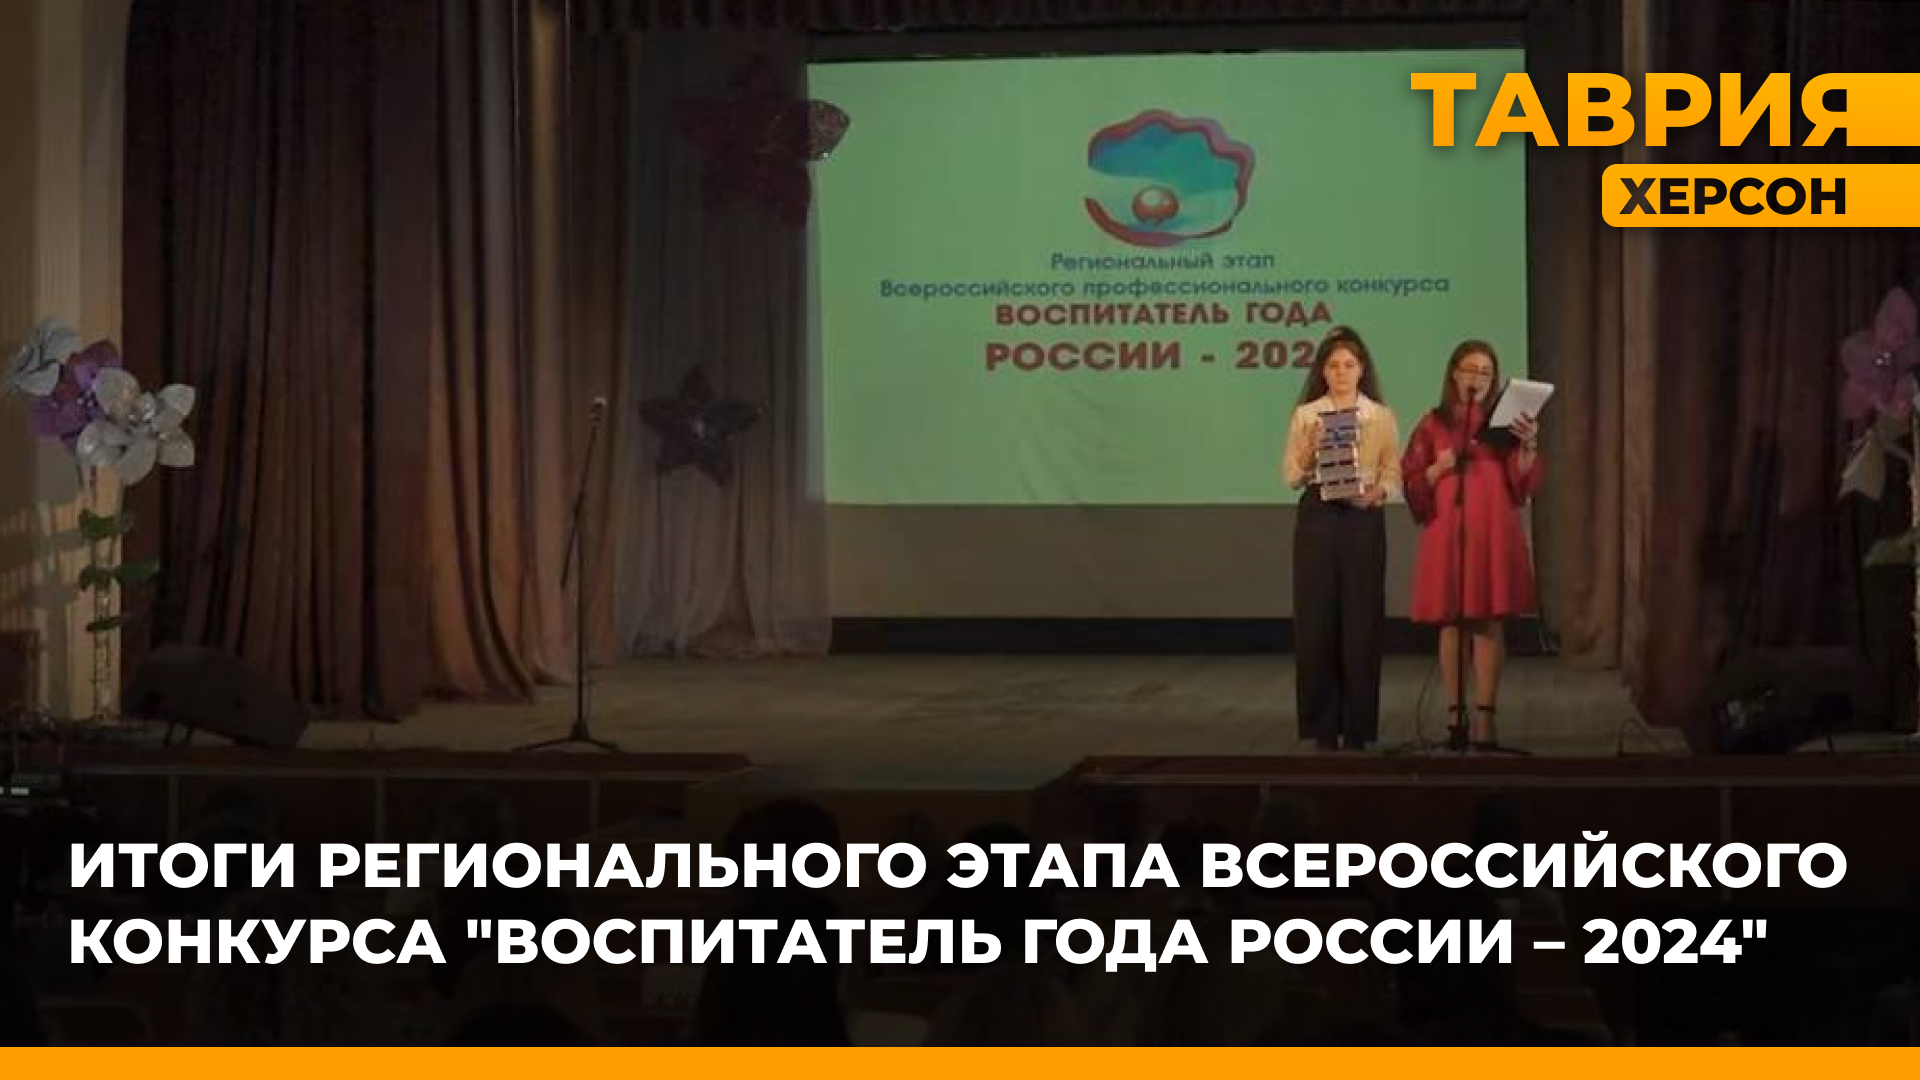 В региональном этапе конкурса "Воспитатель года" победу одержала педагог из Геническа